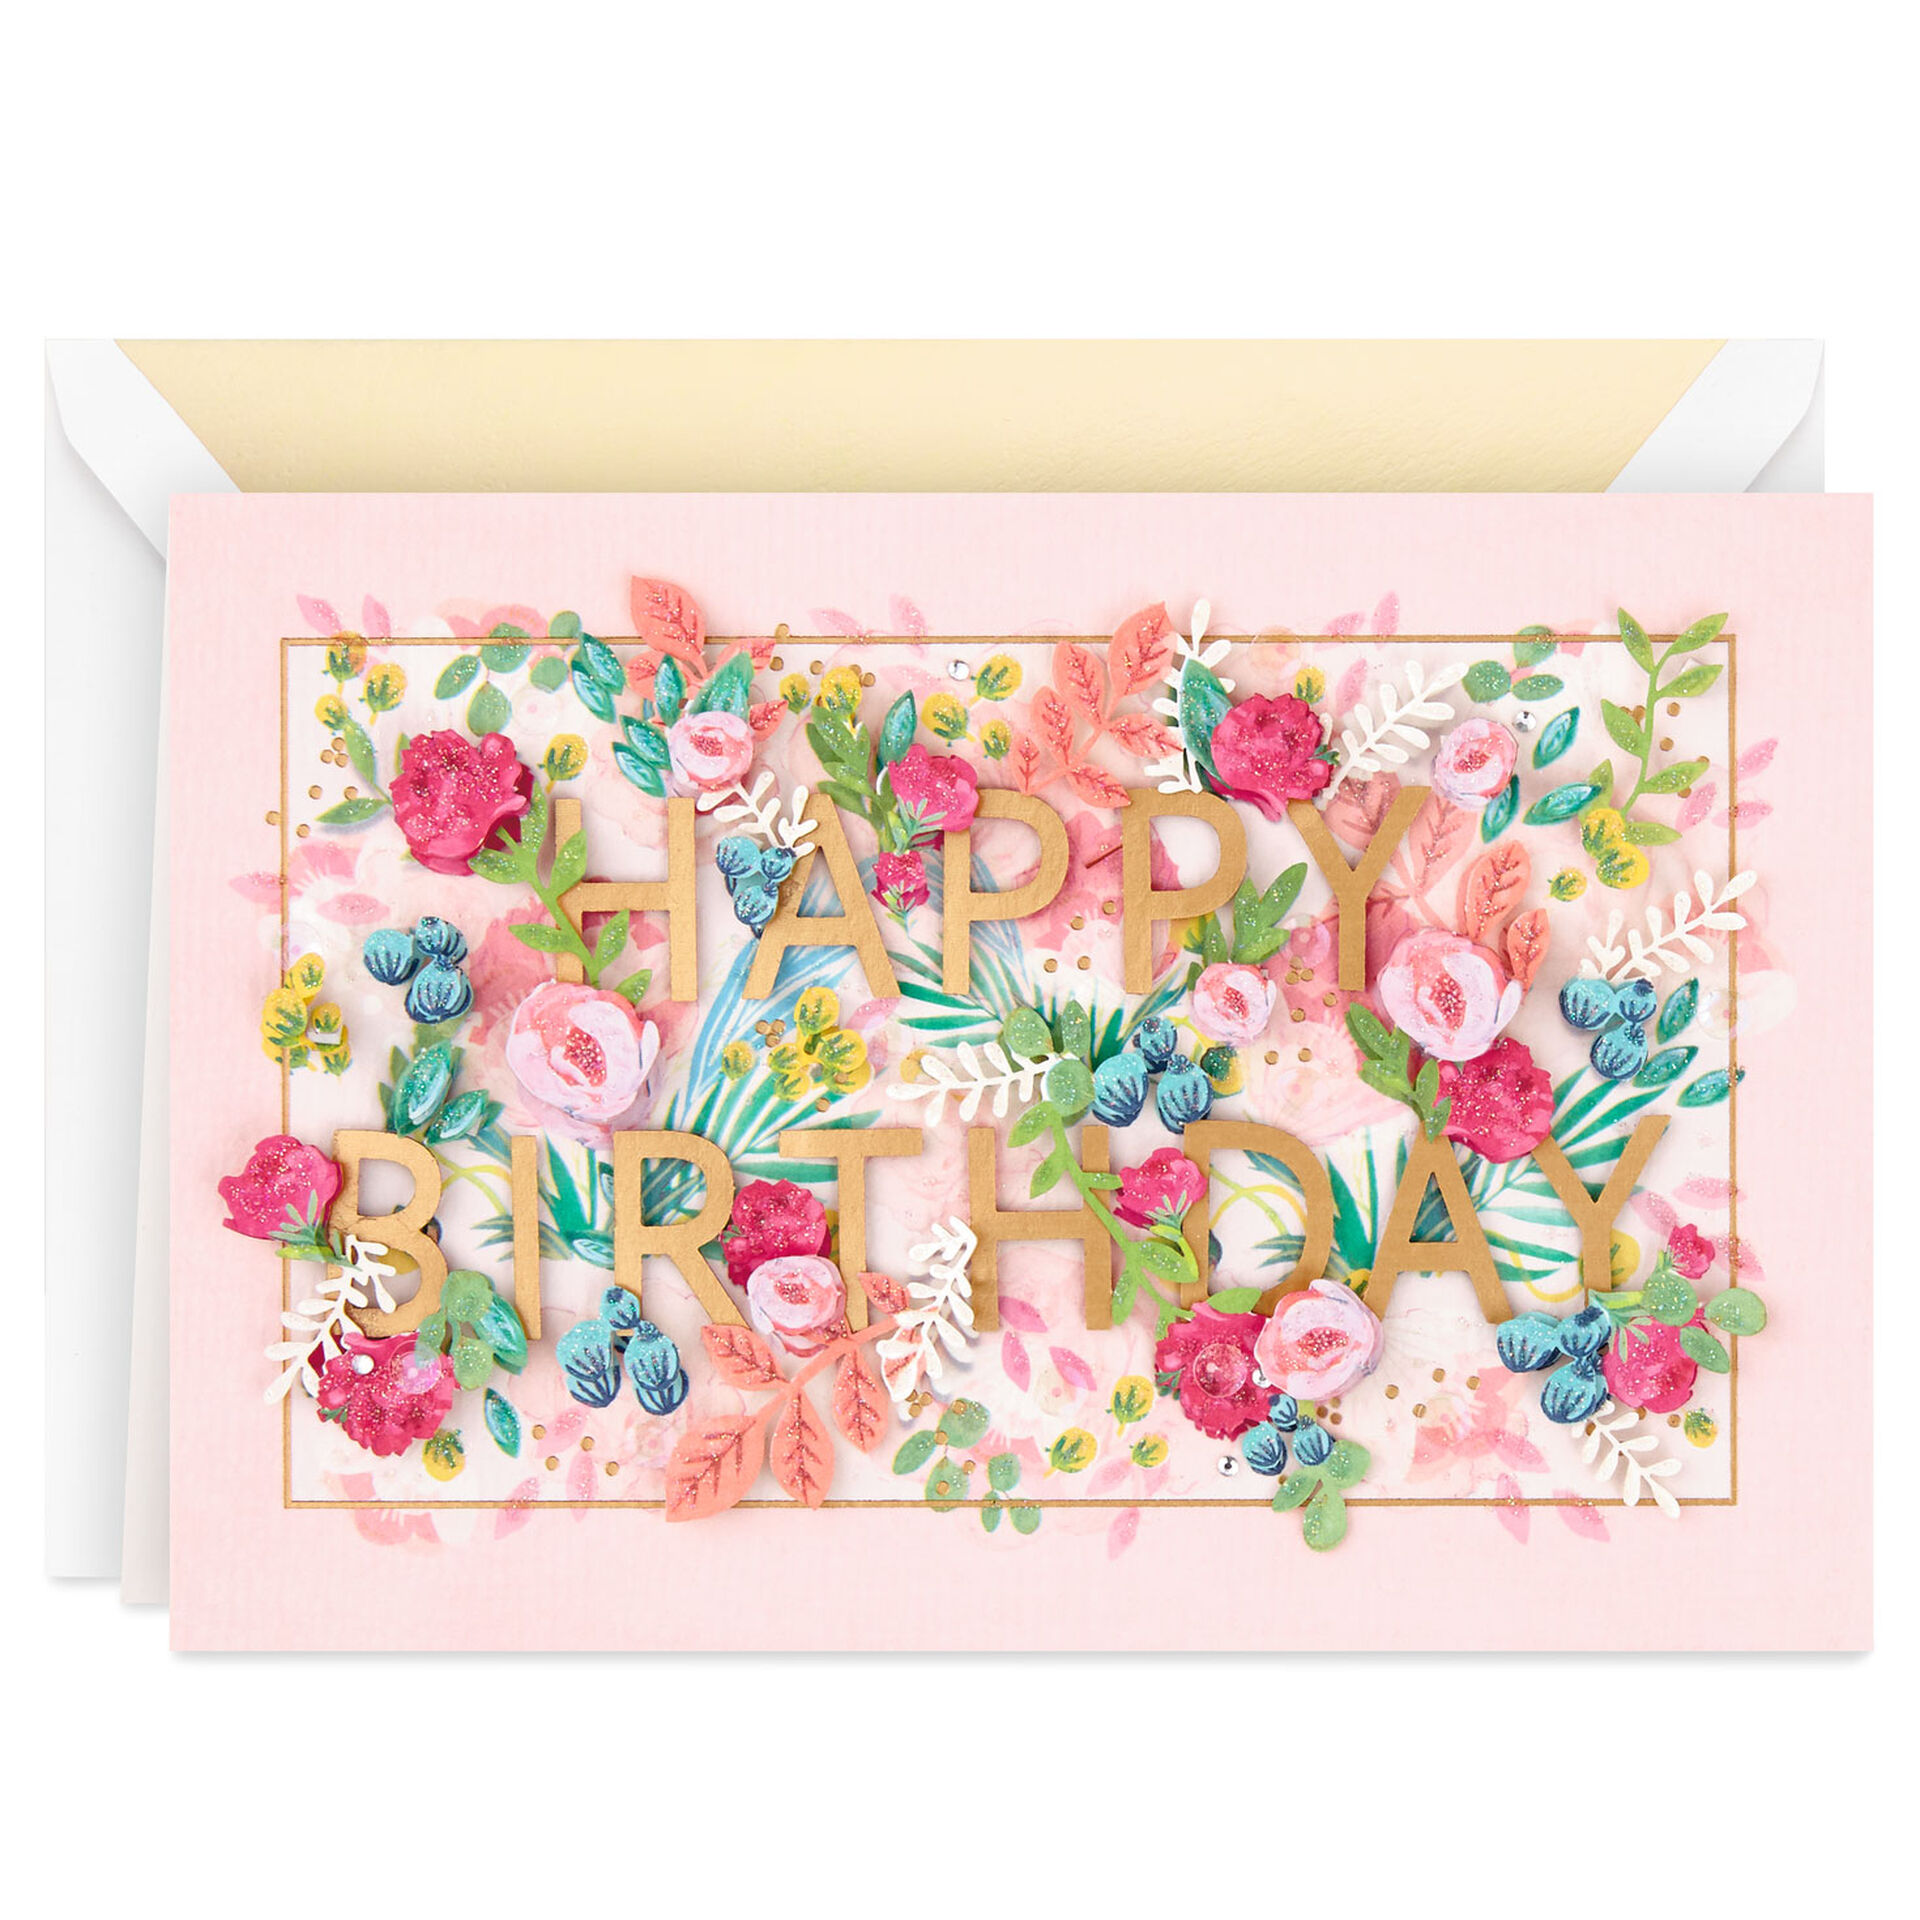 Miniature-Flower-Garden-in-Frame-Birthday-Card_899LAD9476_01